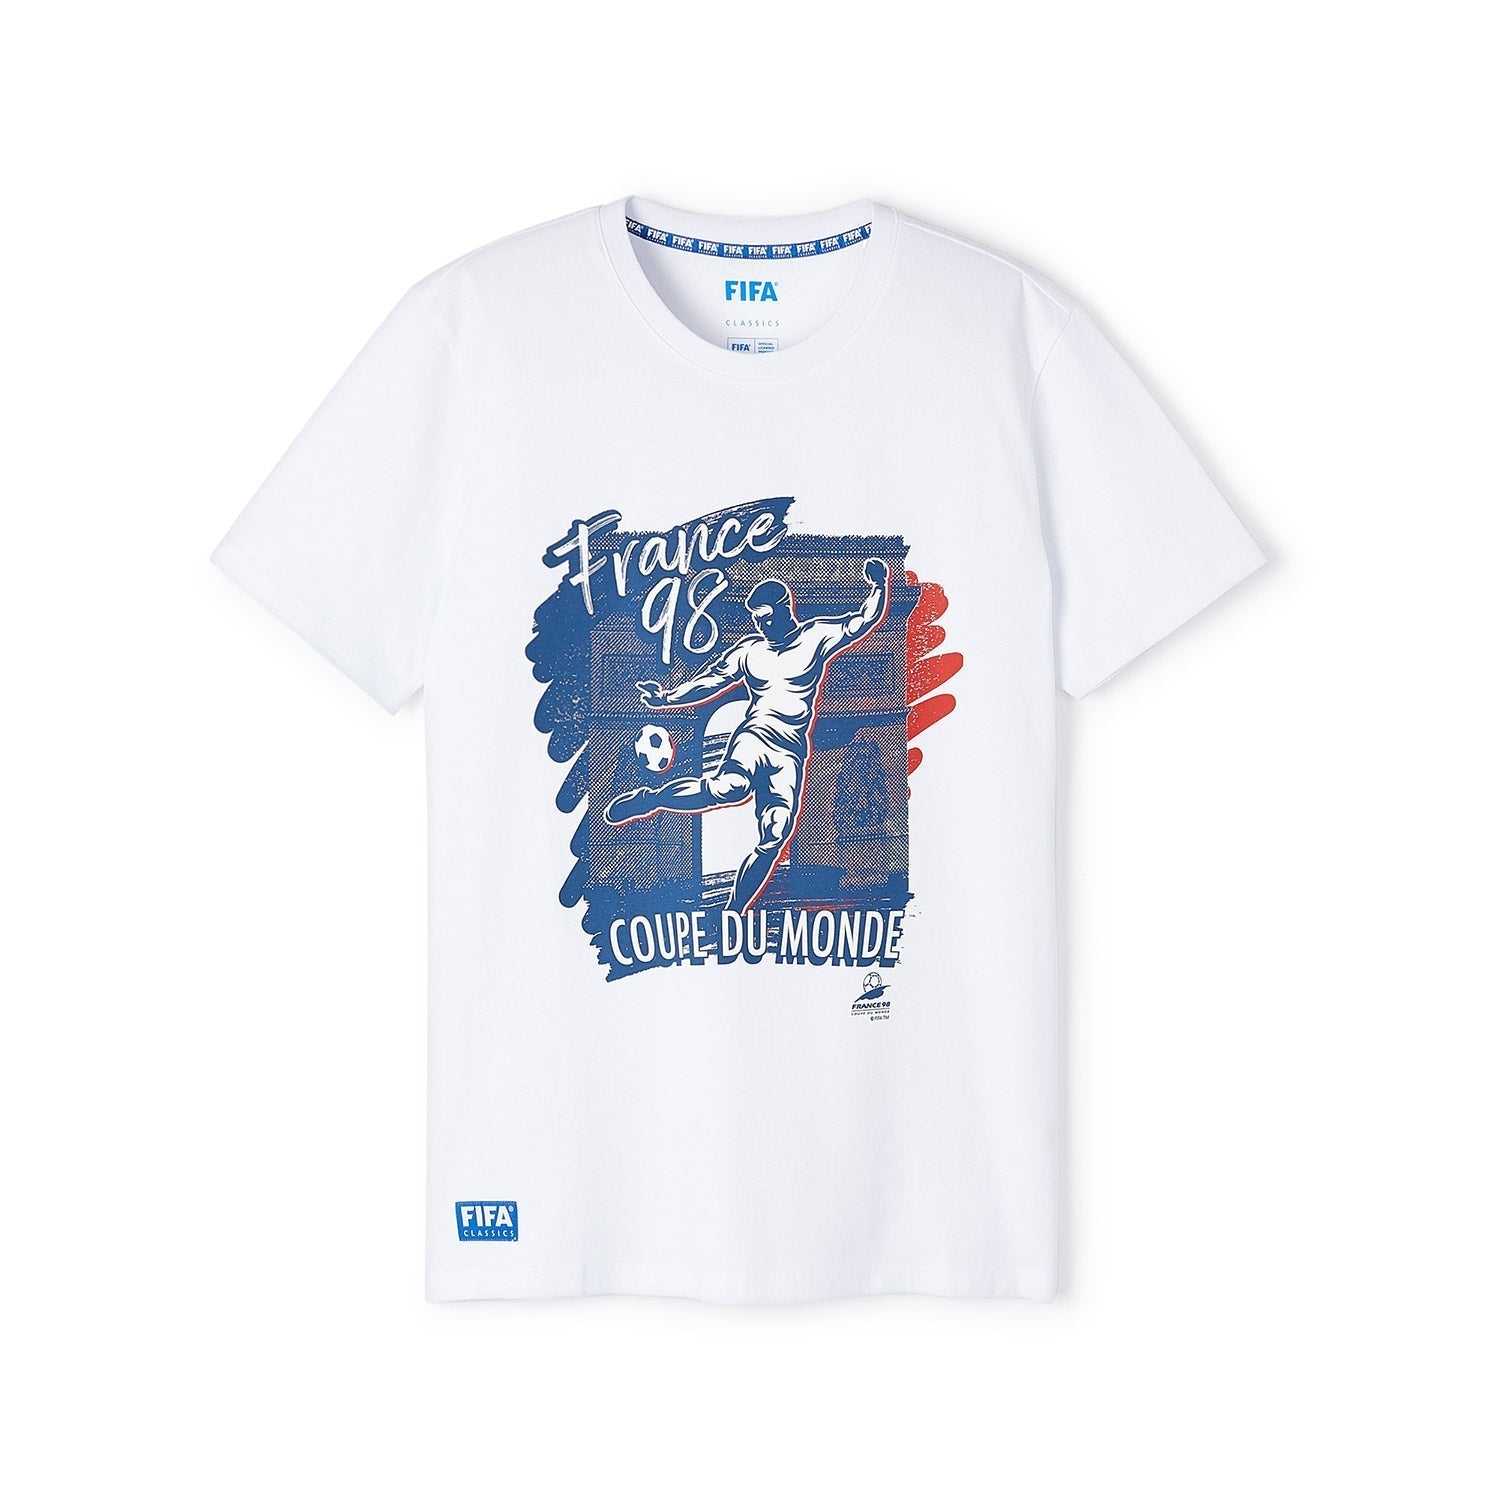 FIFA Rewind France '98 - Coupe Du Monde T-Shirt - Men's